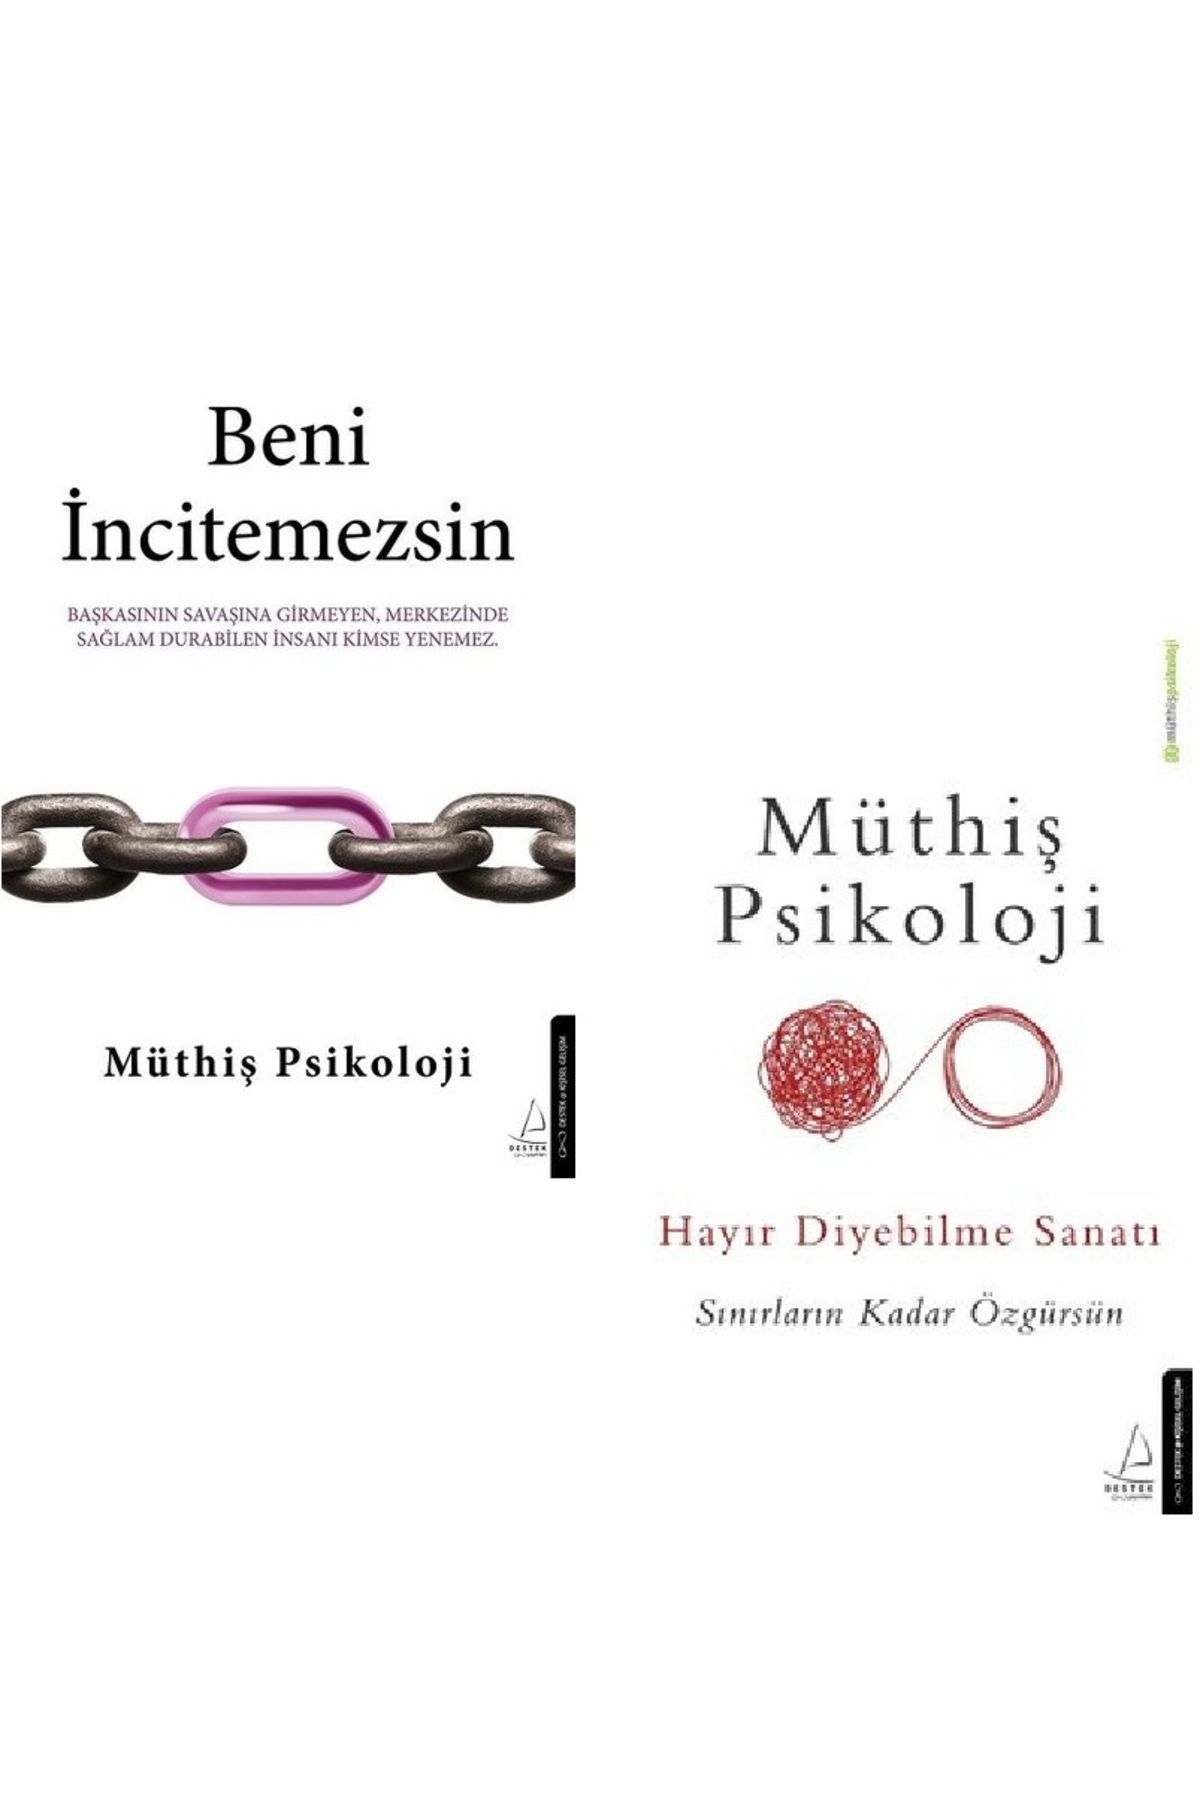 Destek Yayınları Beni İncitemezsin + Hayır Diyebilme Sanatı / 2 Kitap Set